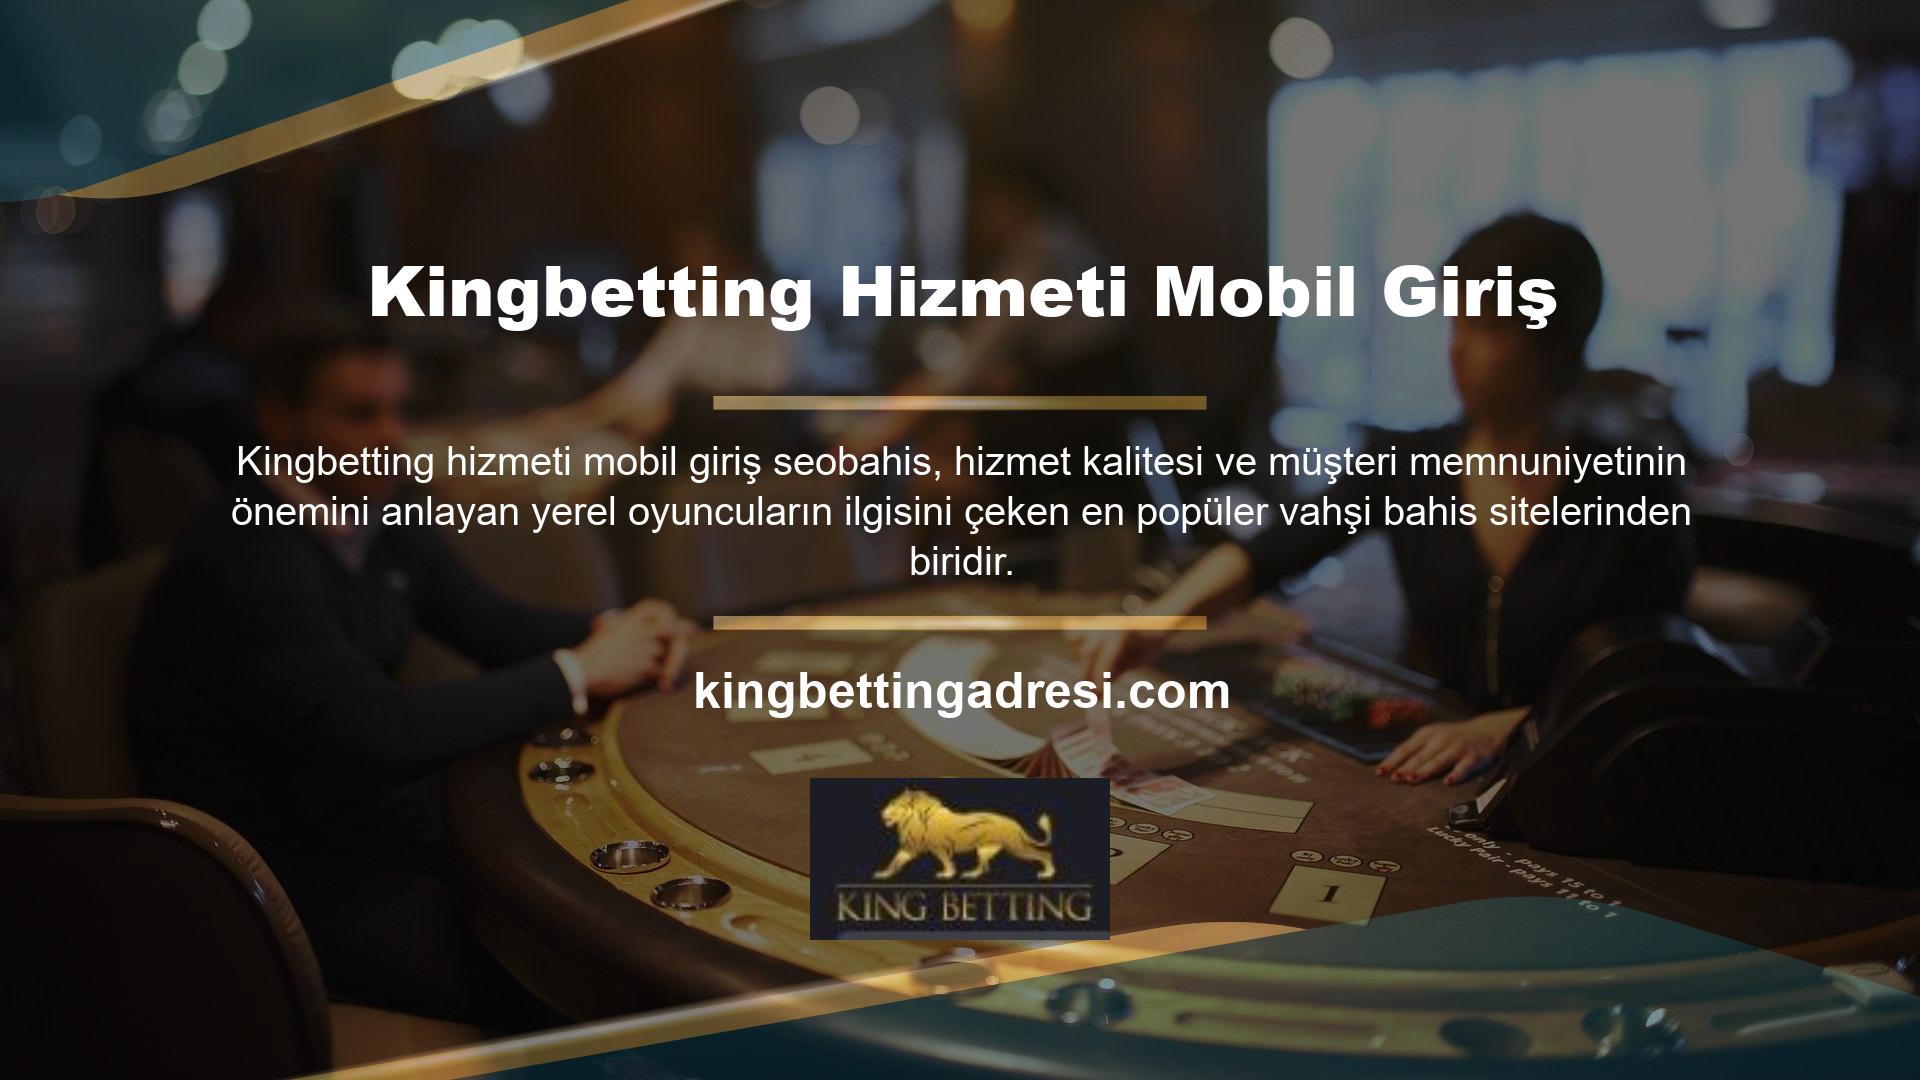 Mobil giriş offshore platformu Kingbetting uzun süredir Türkiye pazarına hizmet veriyor